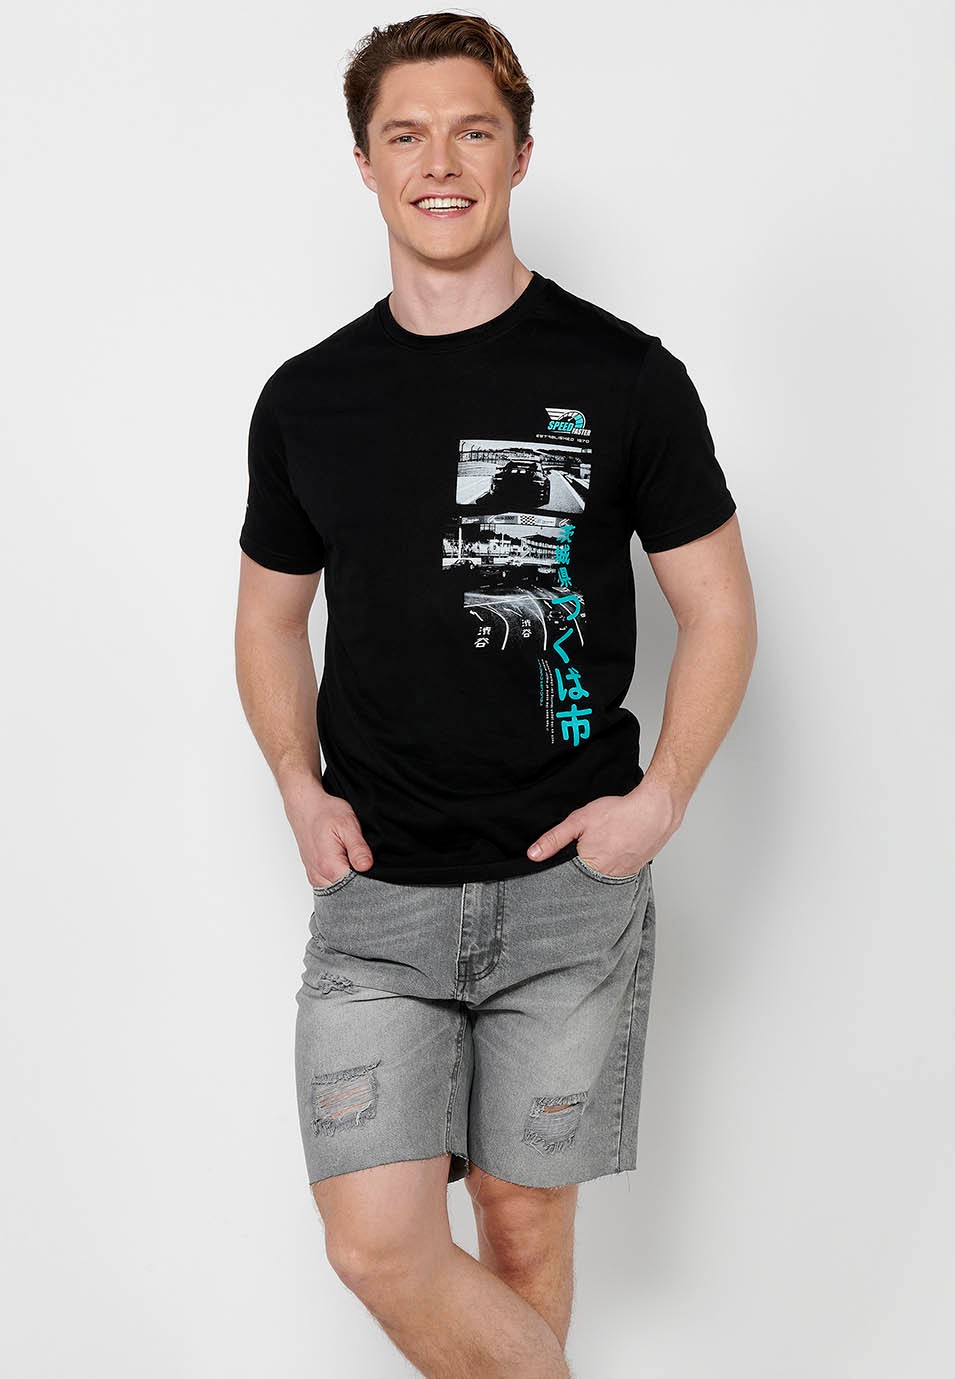 Kurzärmliges T-Shirt aus Baumwolle, mehrfarbiger Brustdruck, schwarze Farbe für Herren